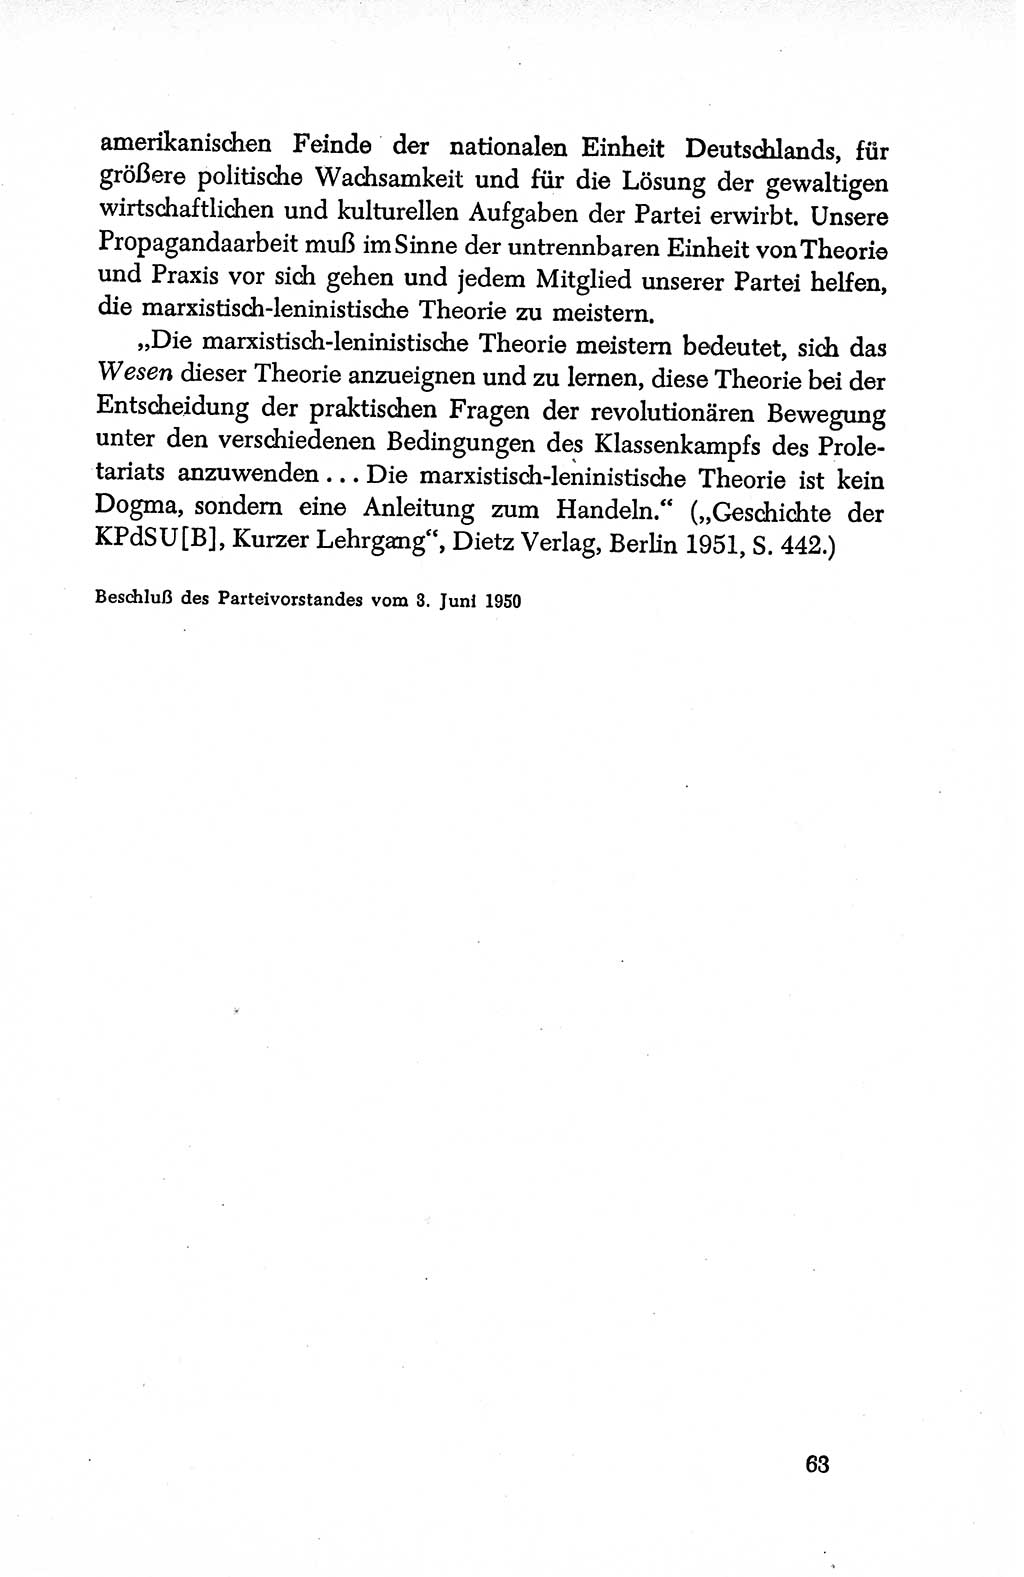 Dokumente der Sozialistischen Einheitspartei Deutschlands (SED) [Deutsche Demokratische Republik (DDR)] 1950-1952, Seite 63 (Dok. SED DDR 1950-1952, S. 63)